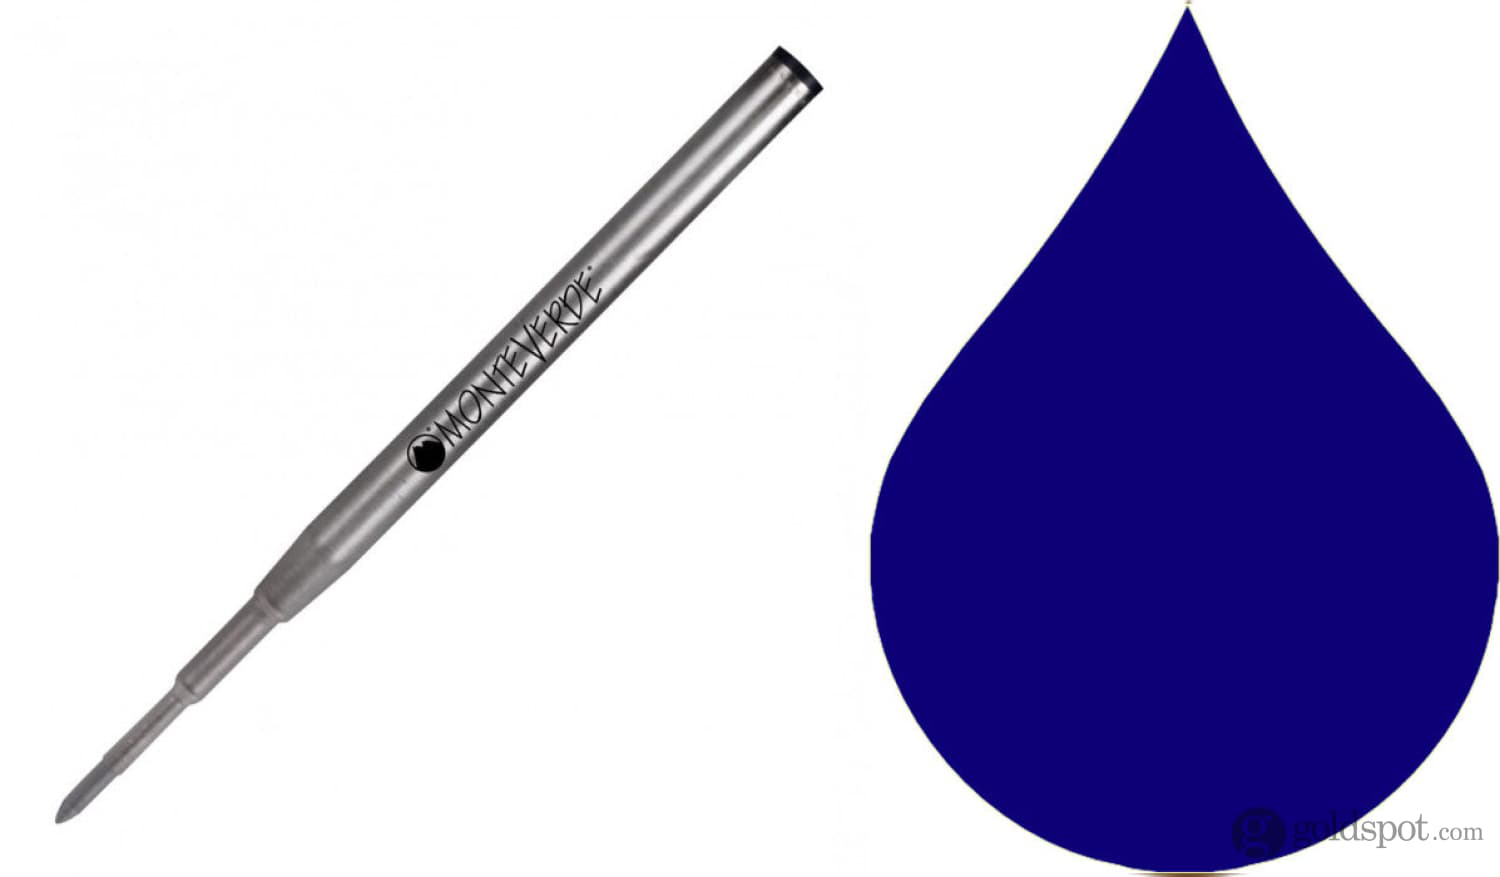 Montblanc Ballpoint Pen in Blue/Black by Monteverde - Goldspot Pens